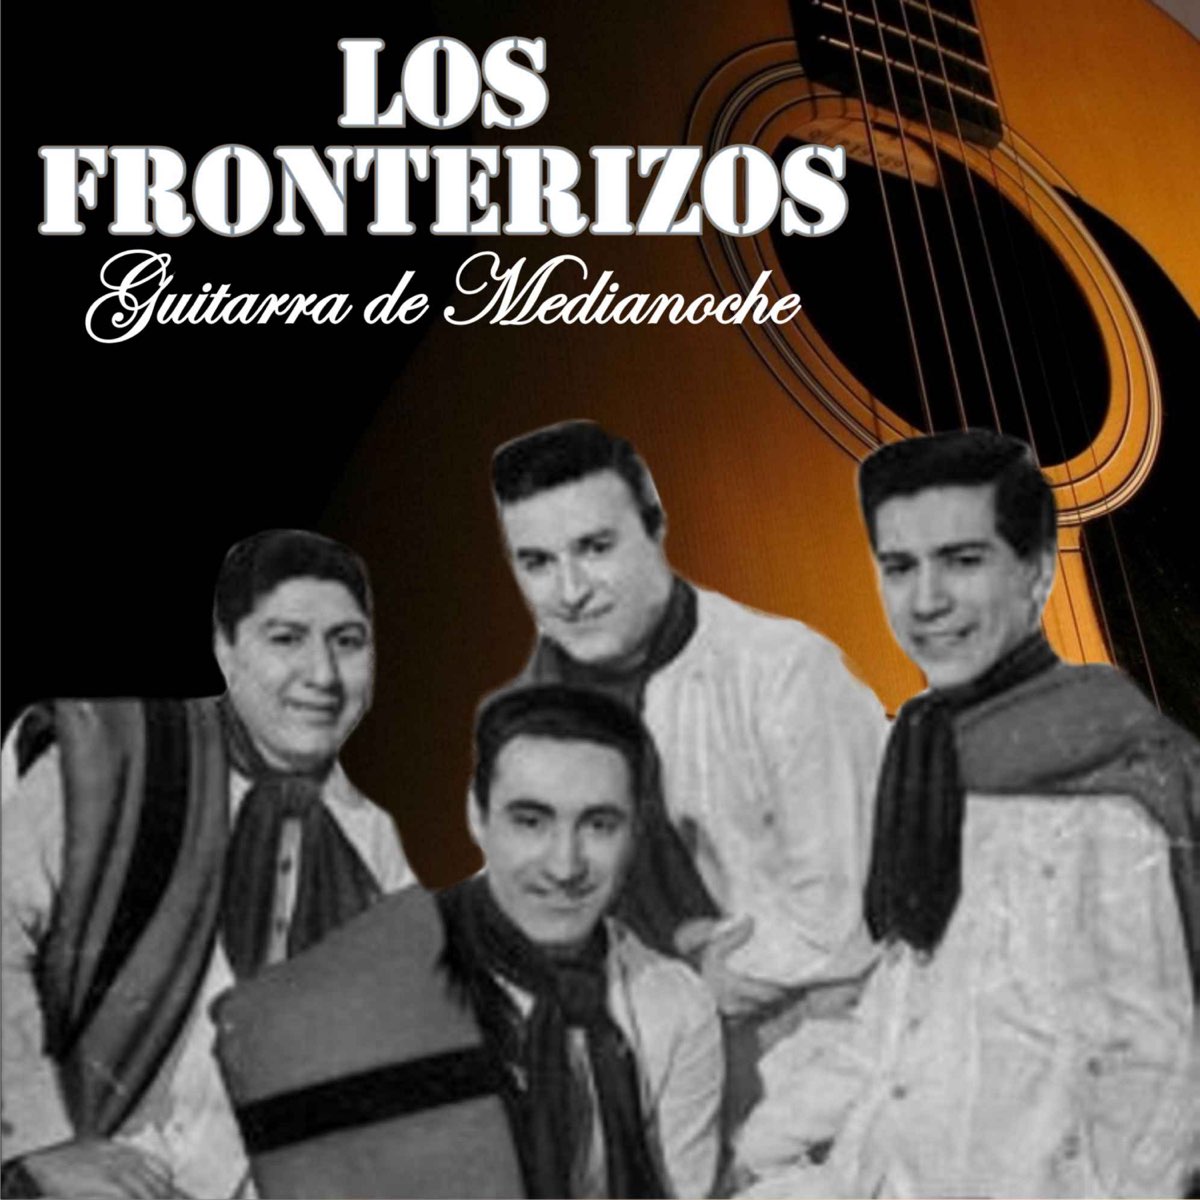 Guitarra de Medianoche by Los Fronterizos on Apple Music